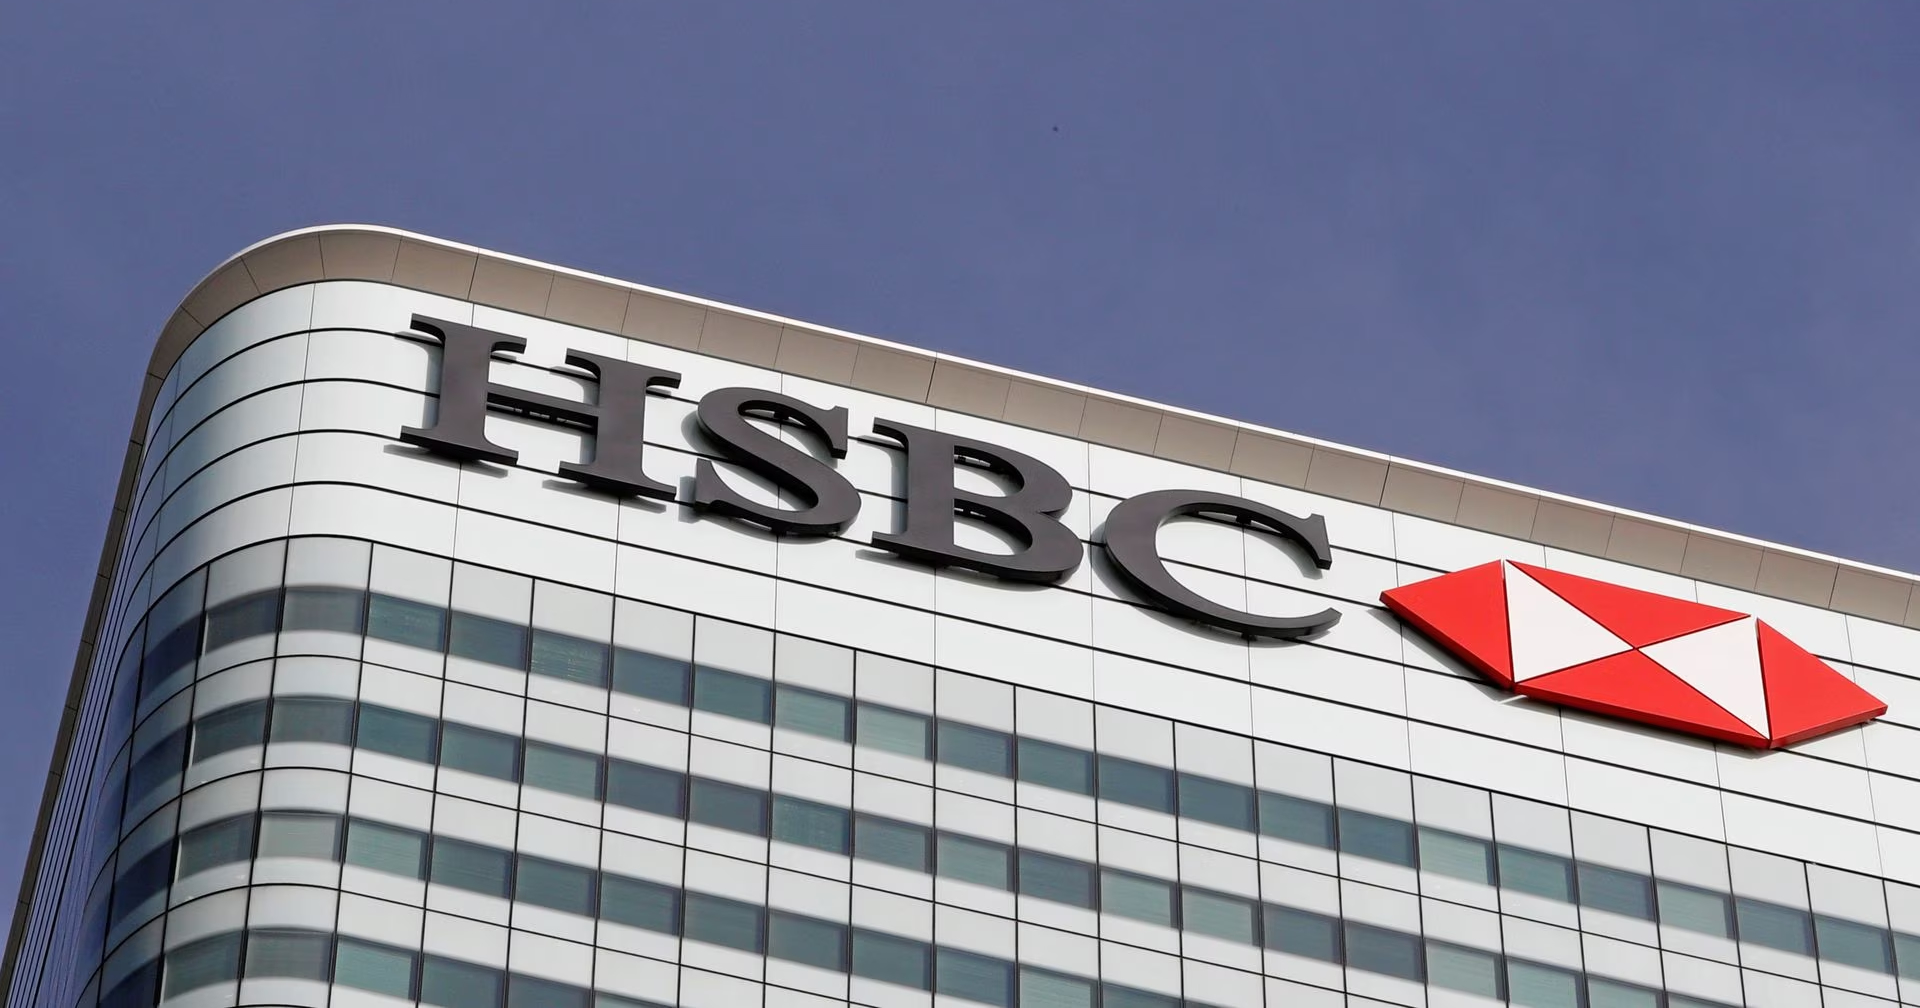 HSBC bank